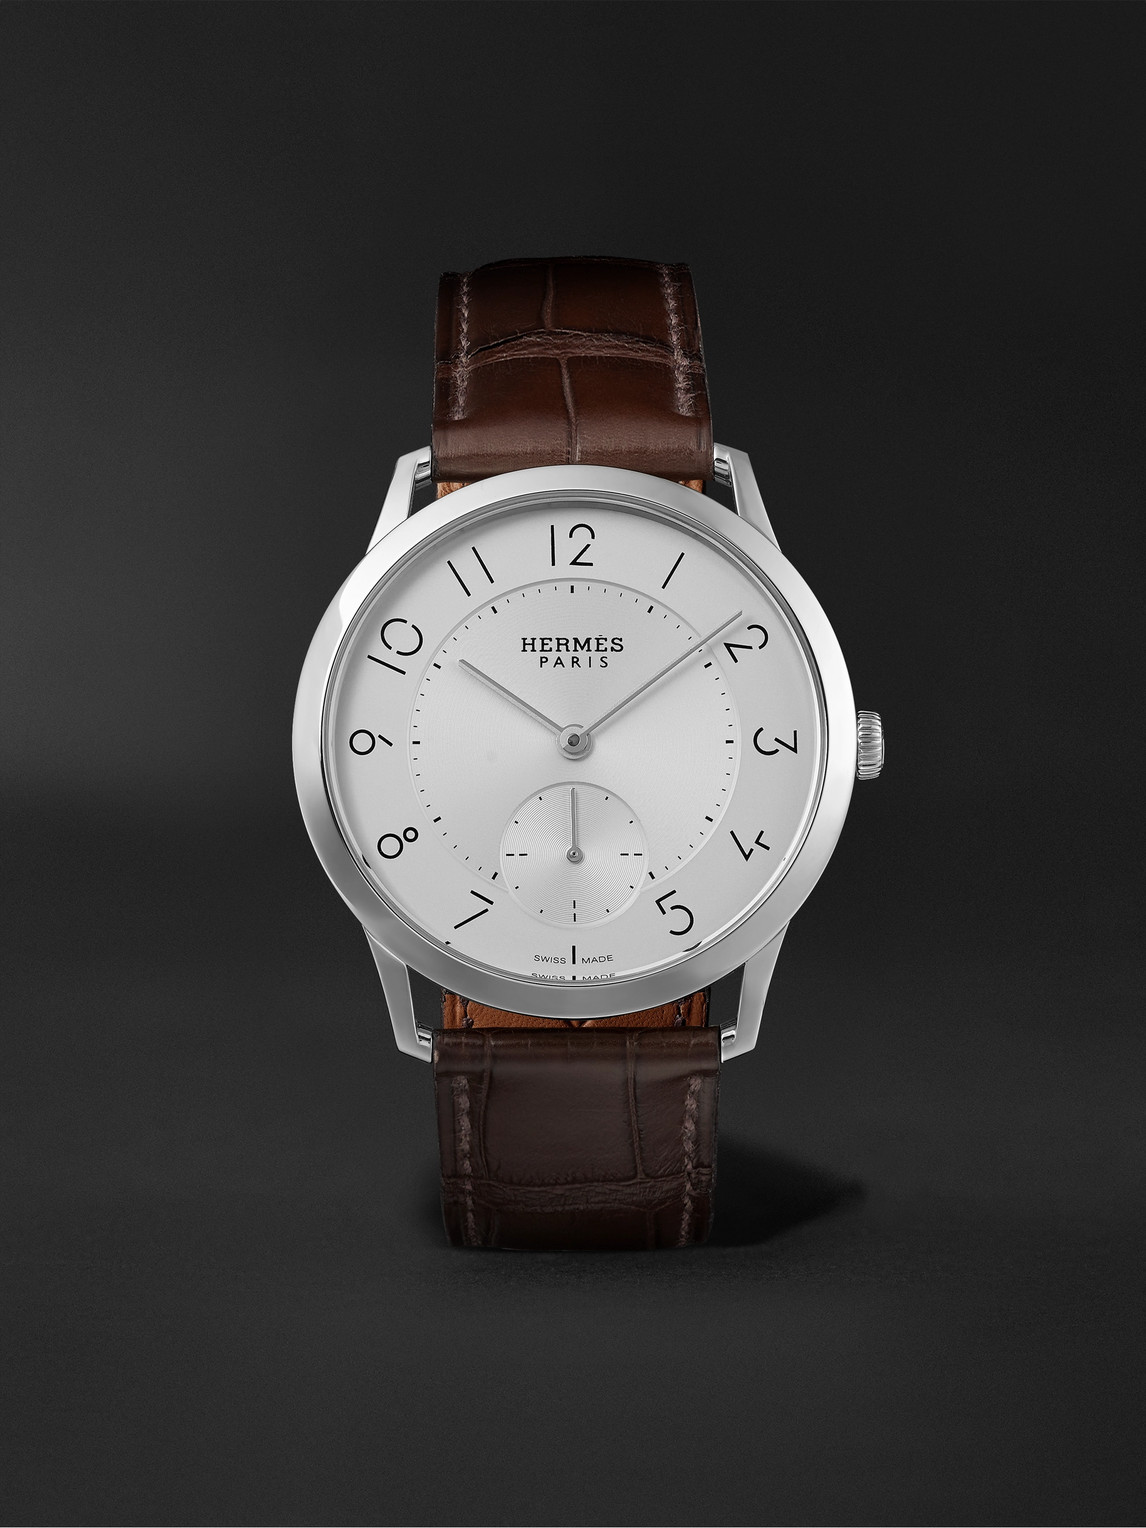 Hermès Timepieces - Slim Acier Automatic 39.5mm Stainless Steel and Alligator Watch, Ref. No. 041760WW00 - Men - White von Hermès Timepieces